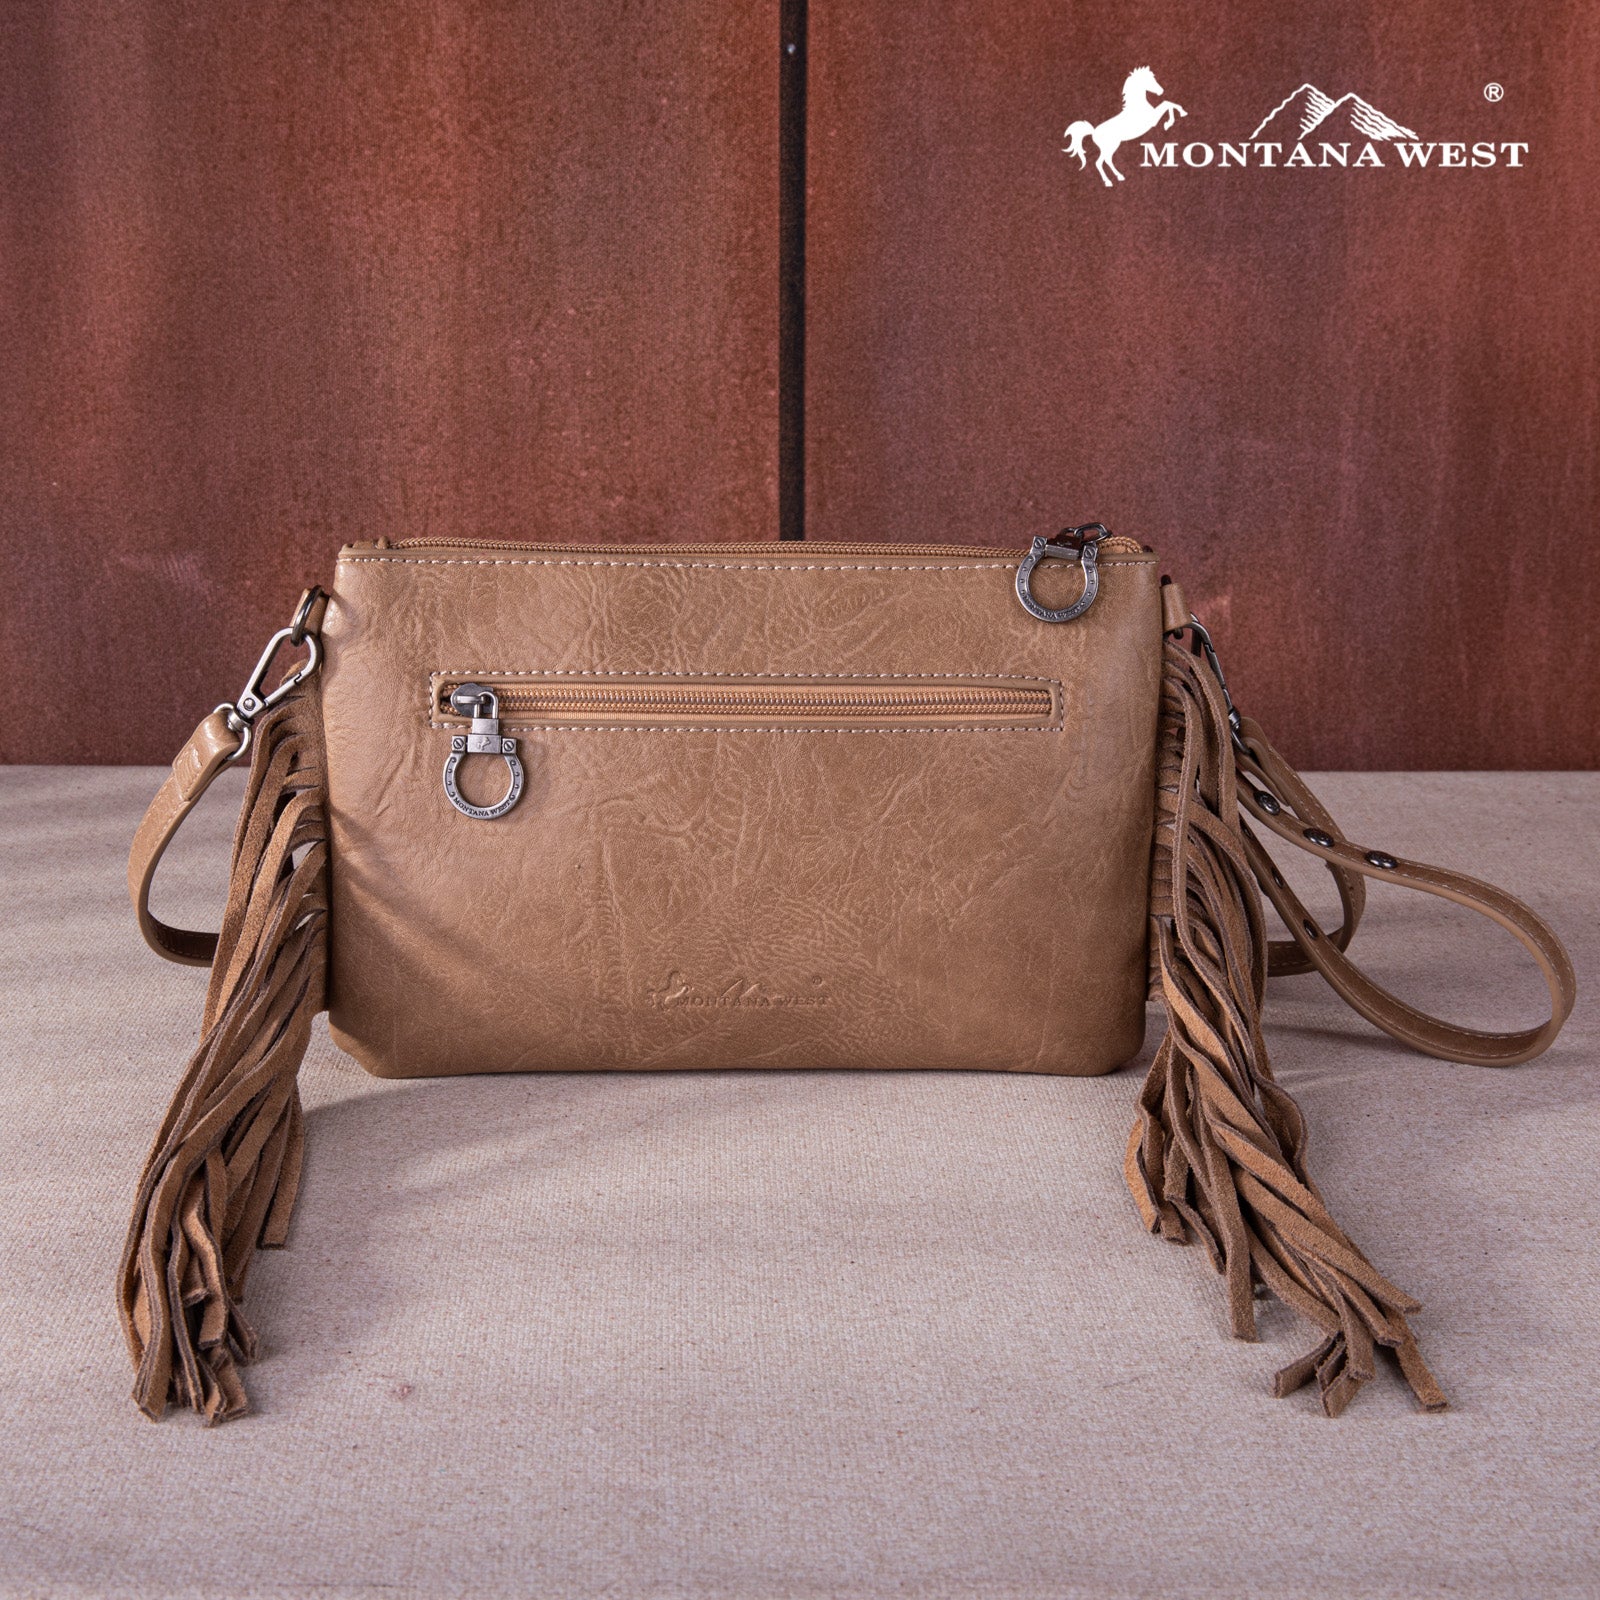 Montana West Fringe Leather Handbag